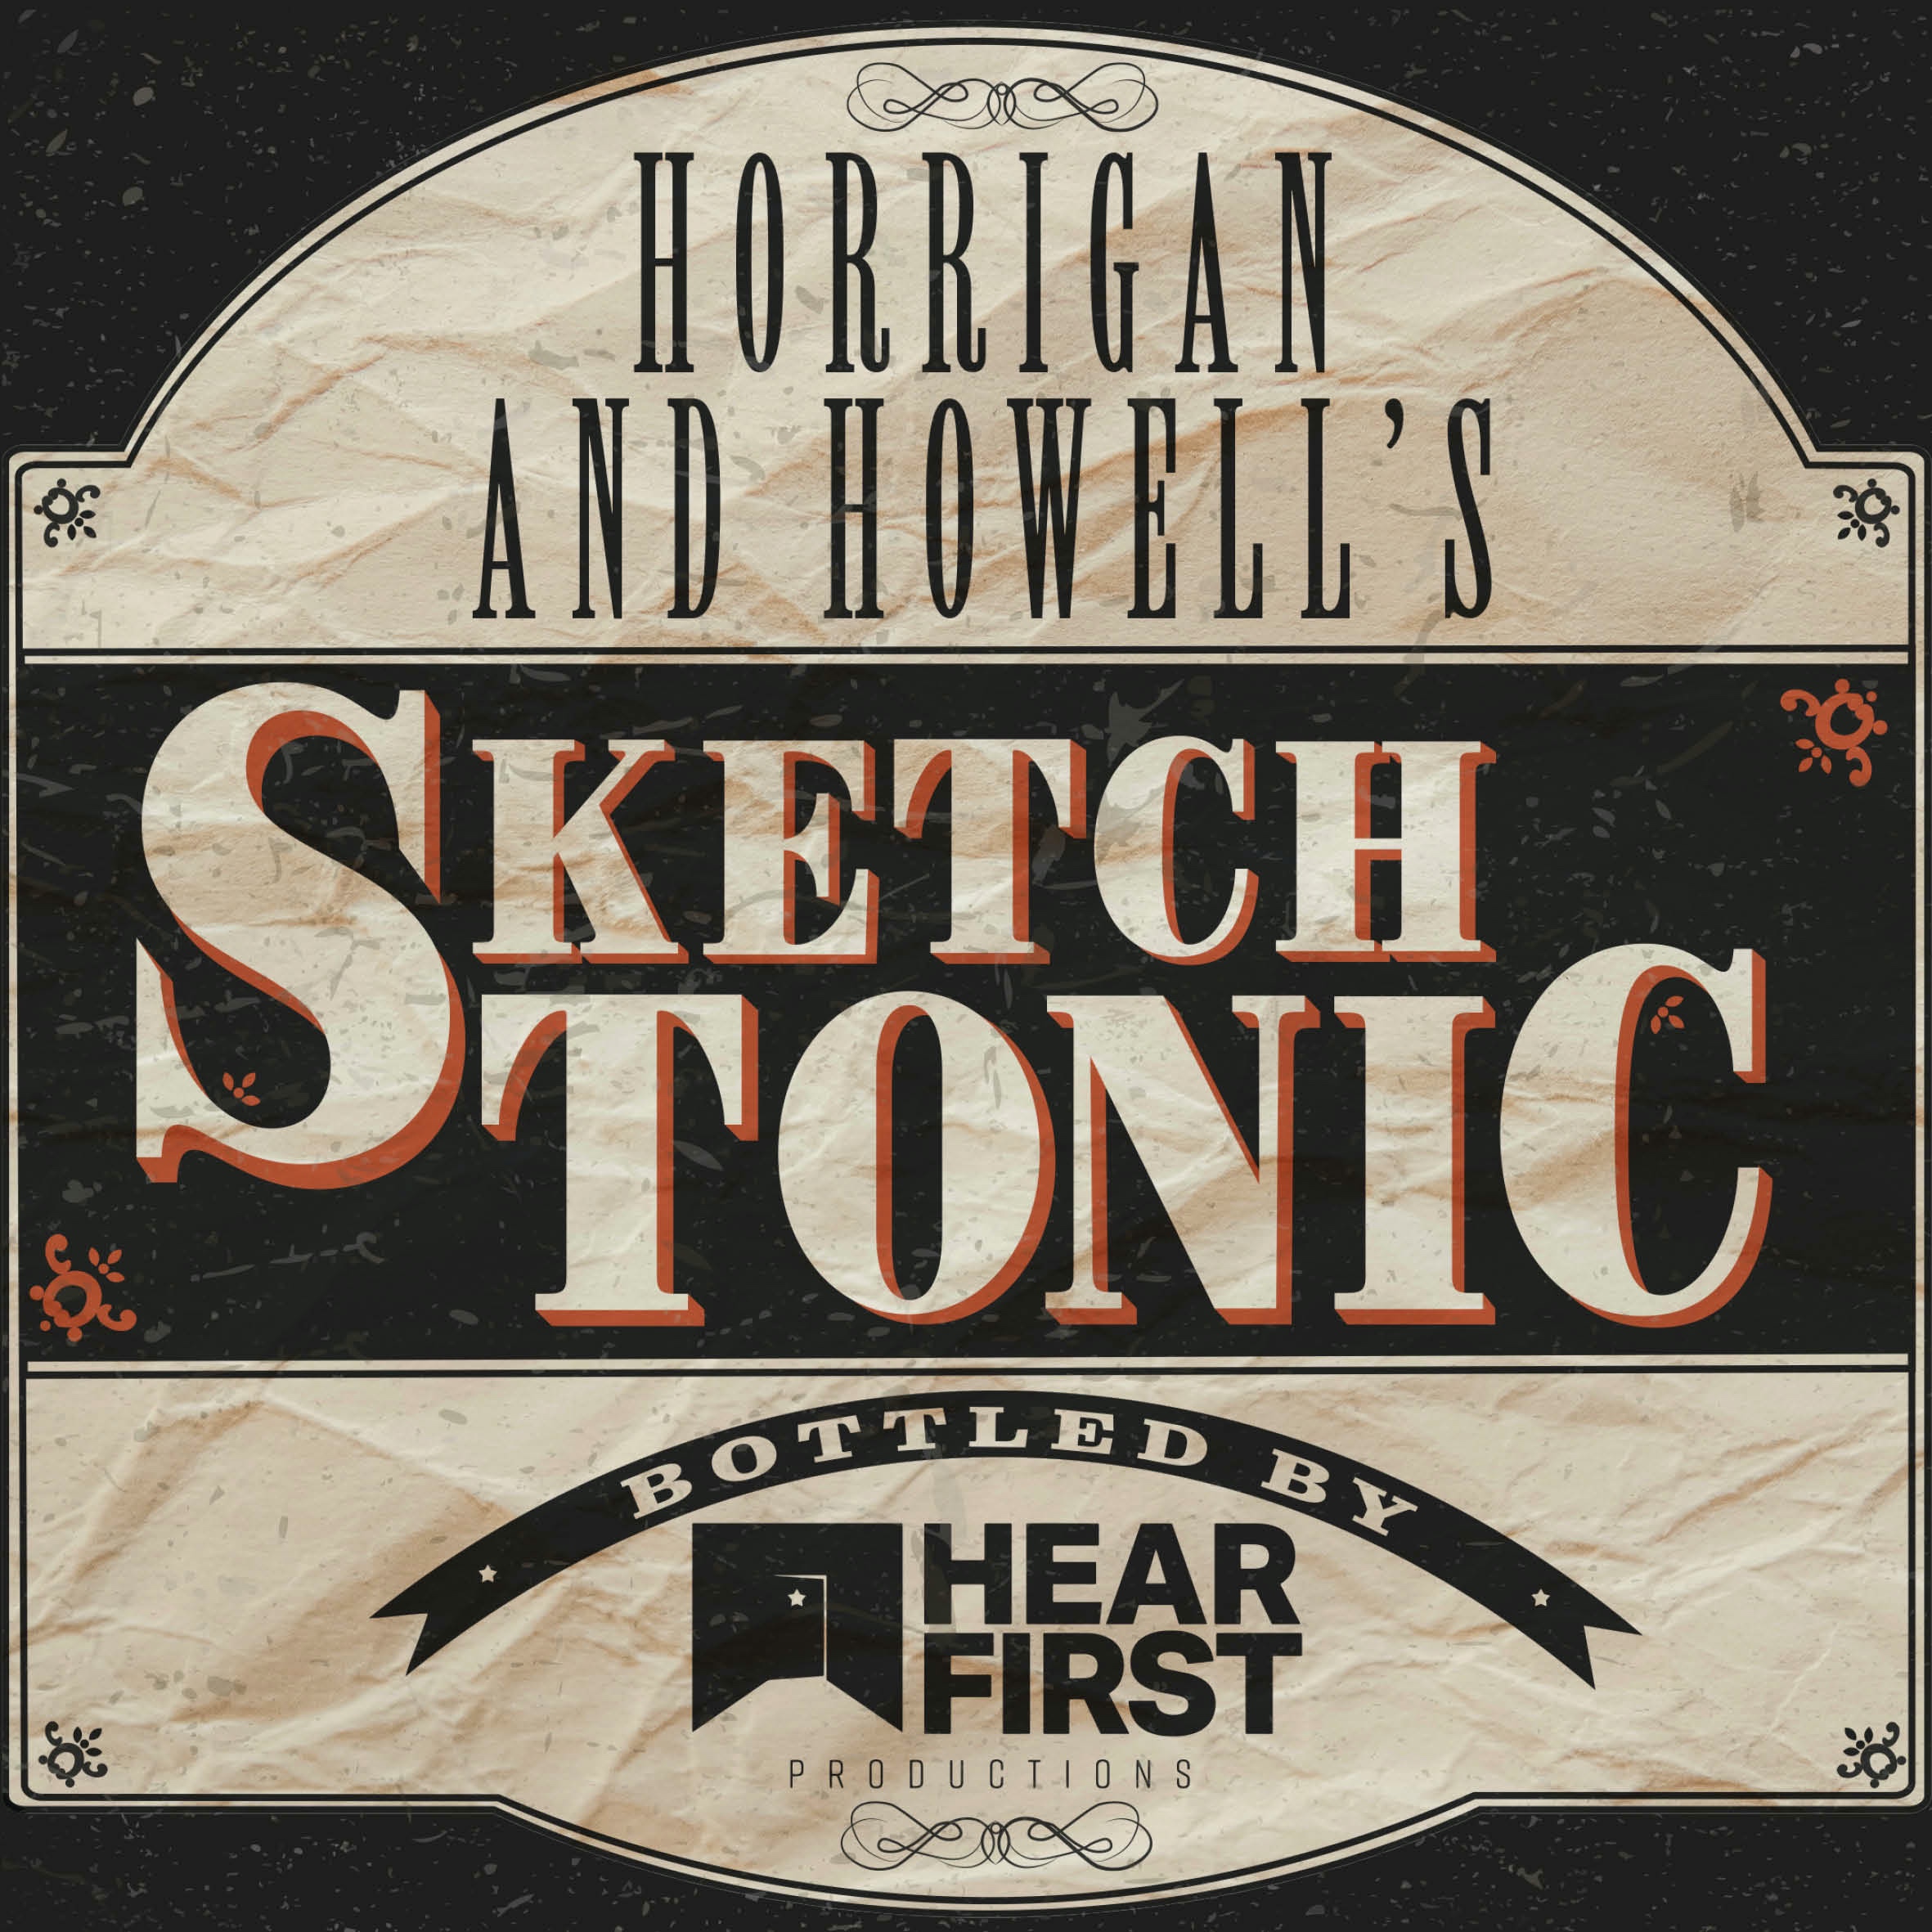 Horrigan & Howell: Sketch Tonic